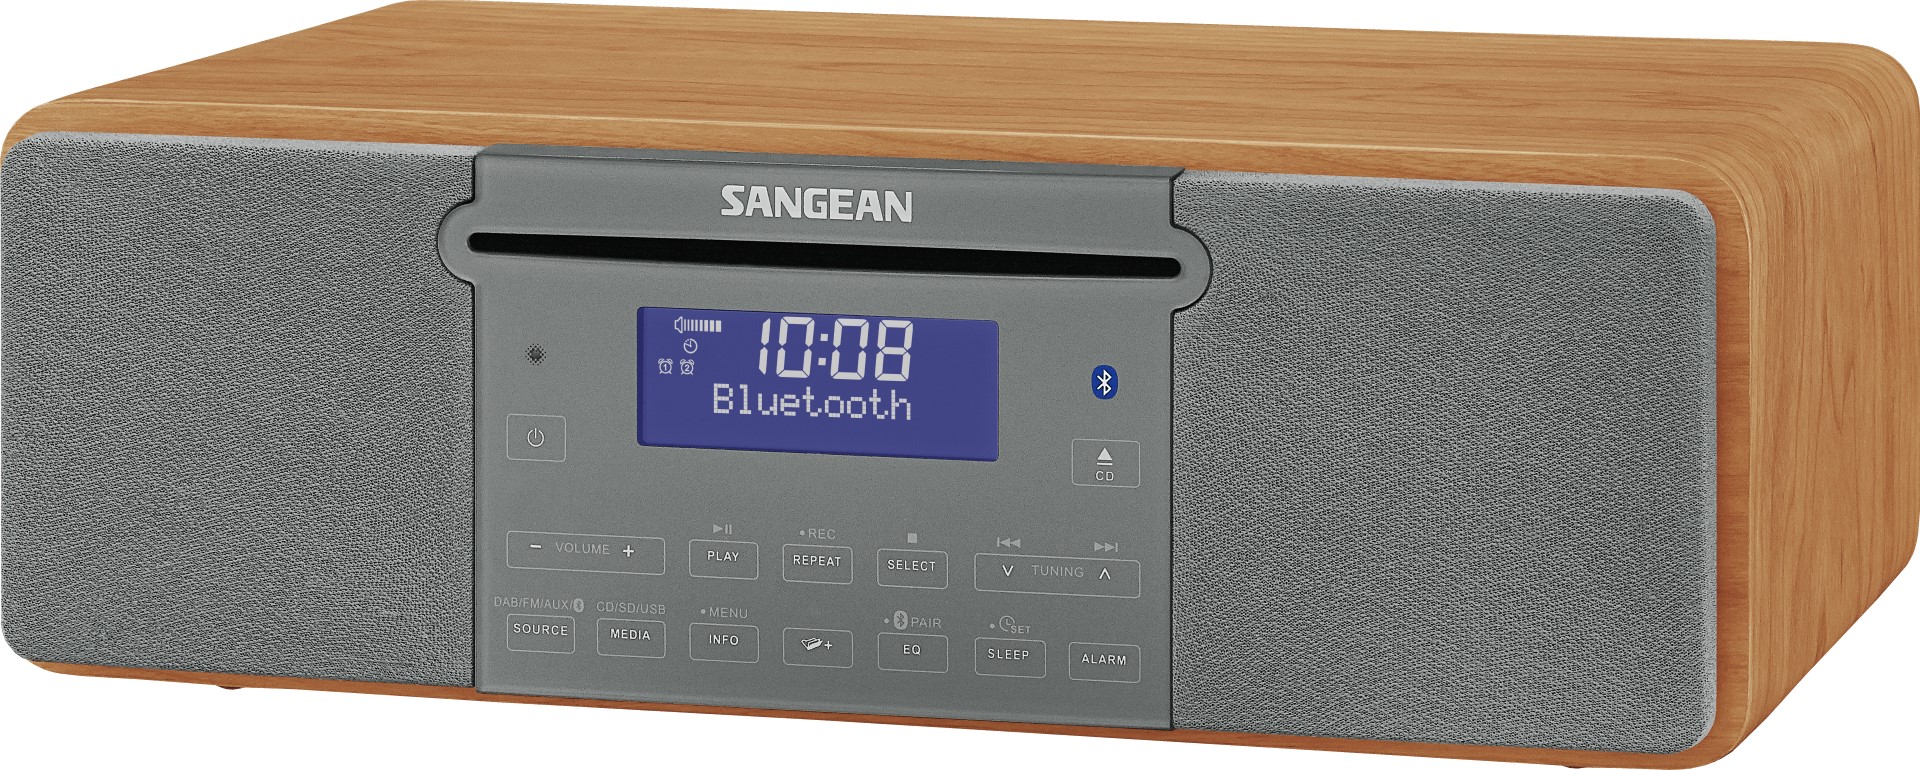 Radio met DAB+, FM, Bluetooth, CD en USB - Sangean DDR-47